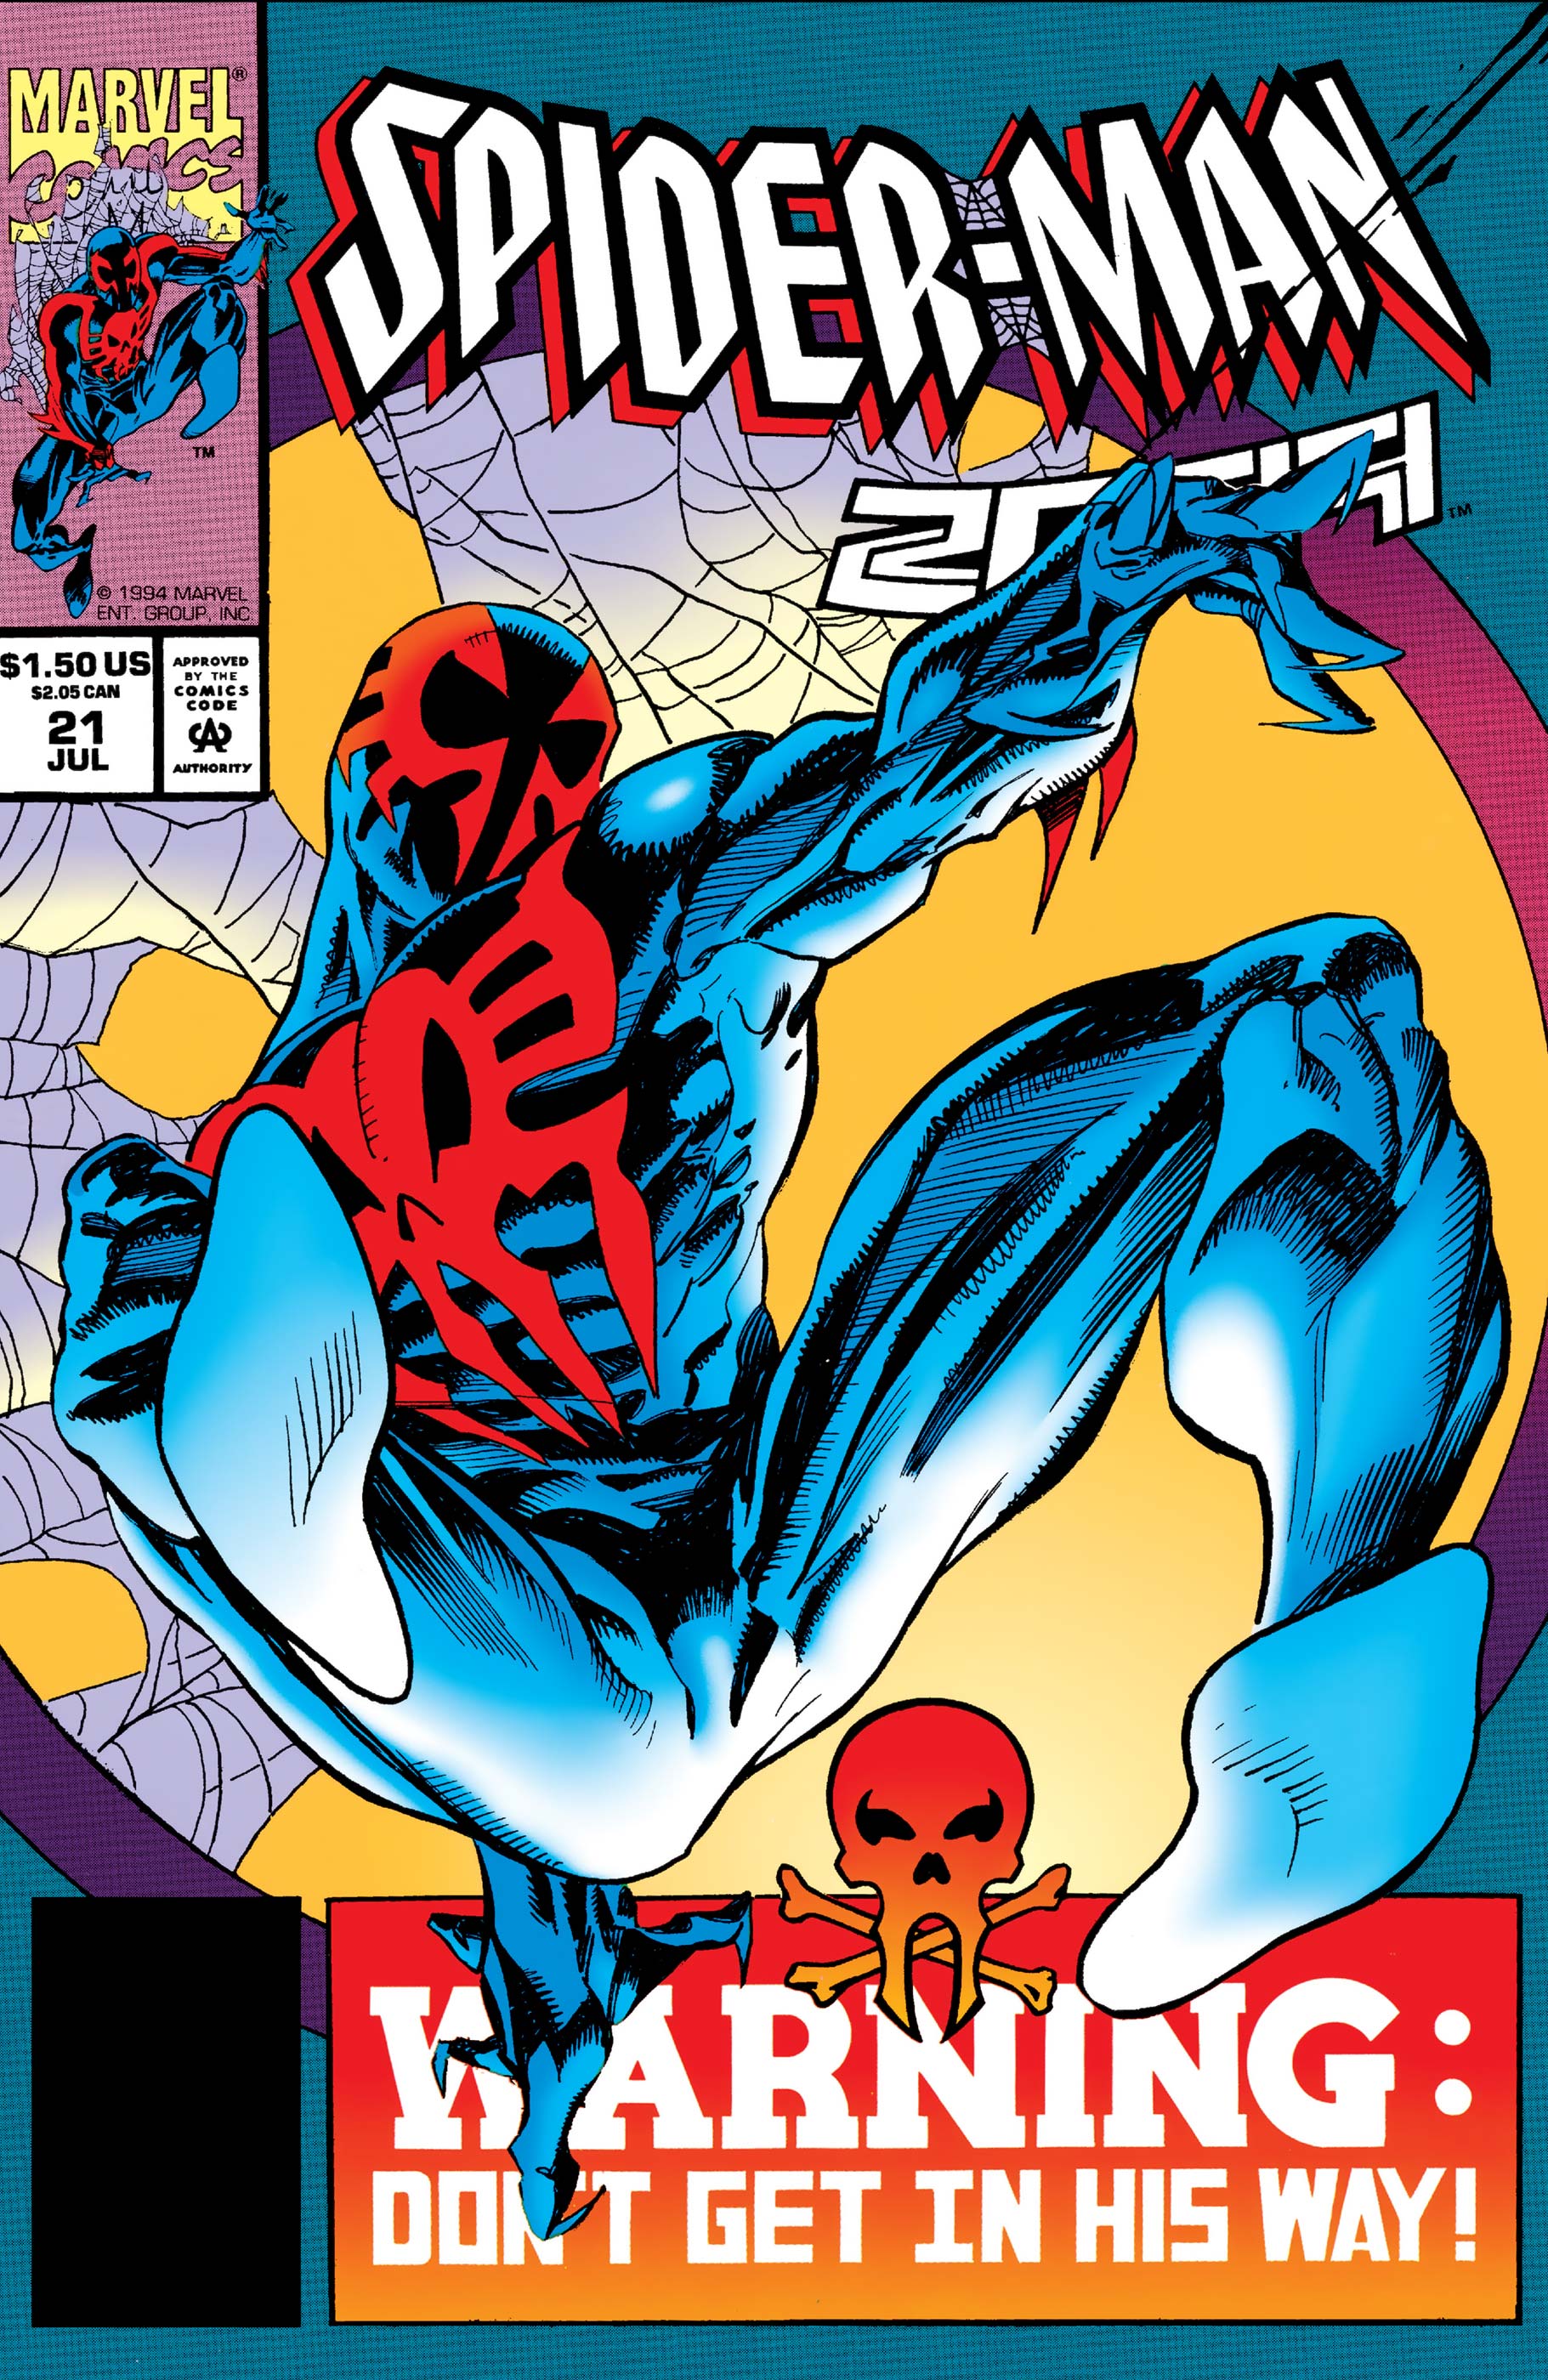 Spider-Man 2099 (1992) #21